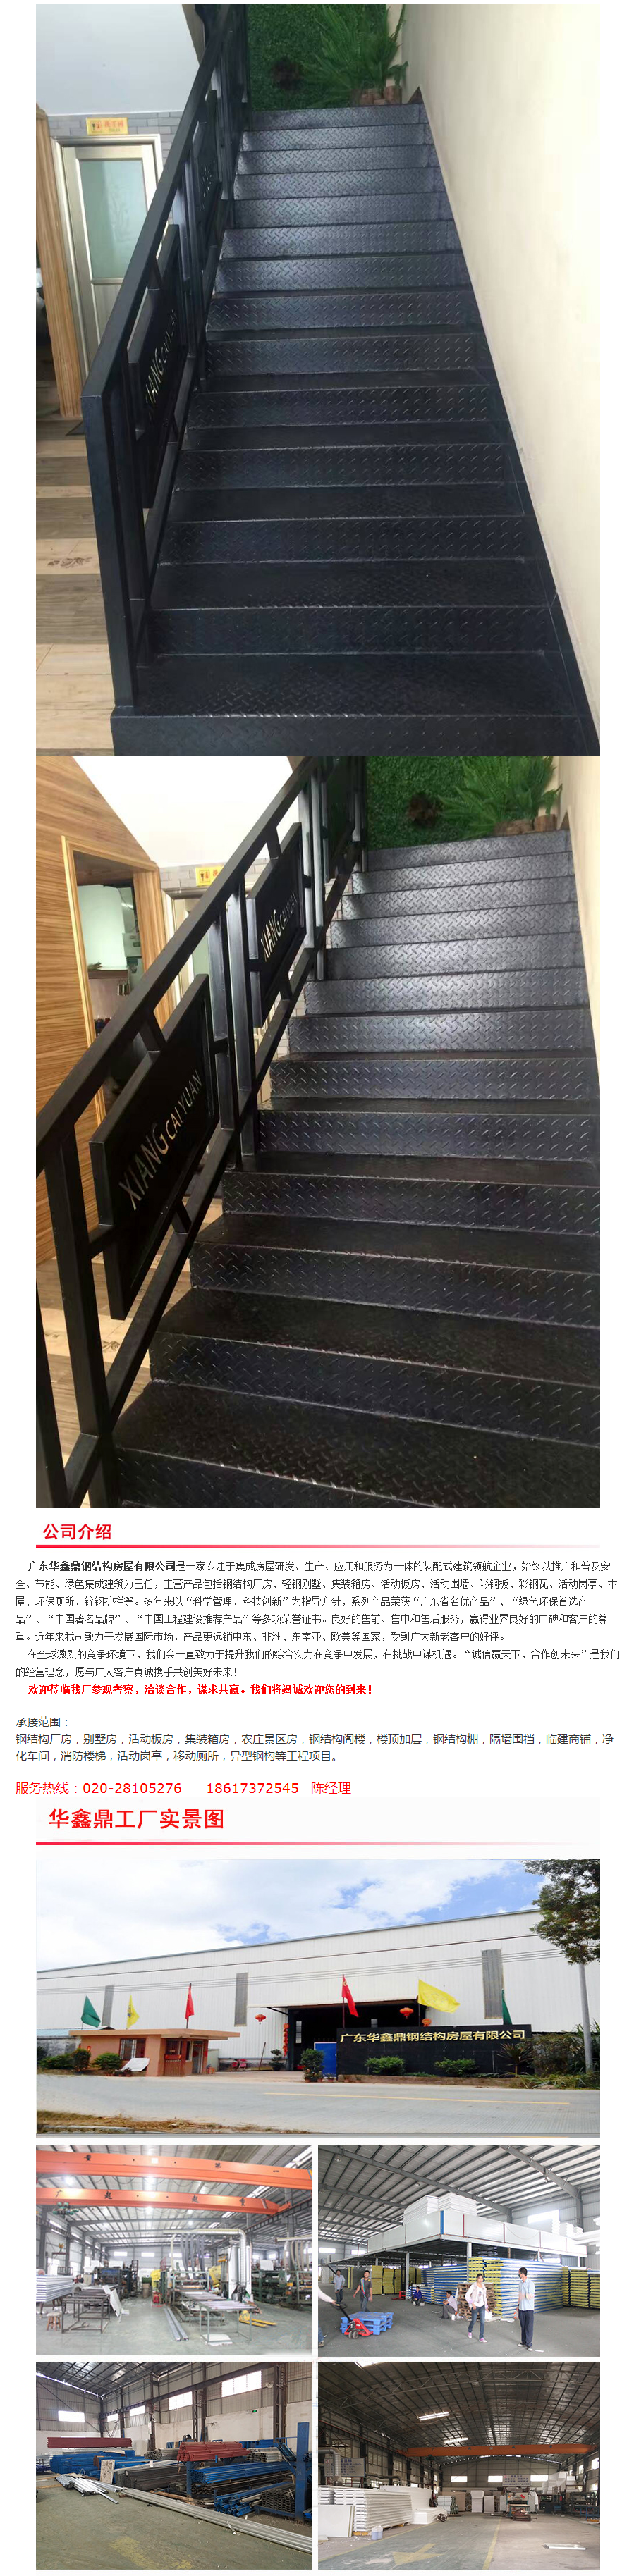 铁质楼梯-.png